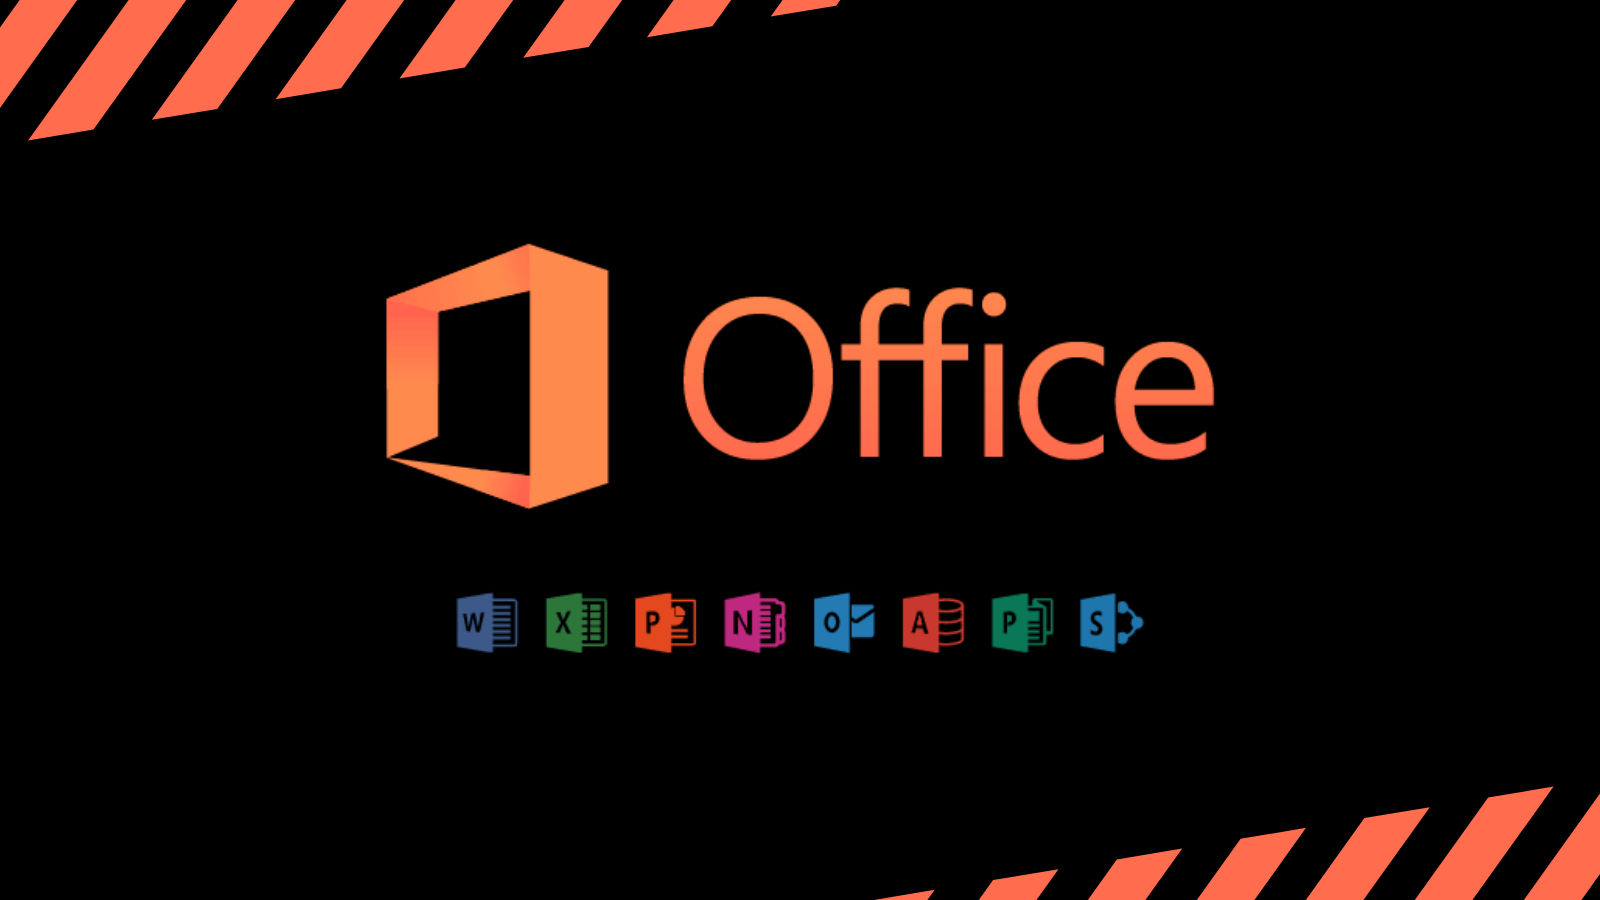 Solusi Aktivasi Microsoft Office Permanen Yang Aman dan Legal